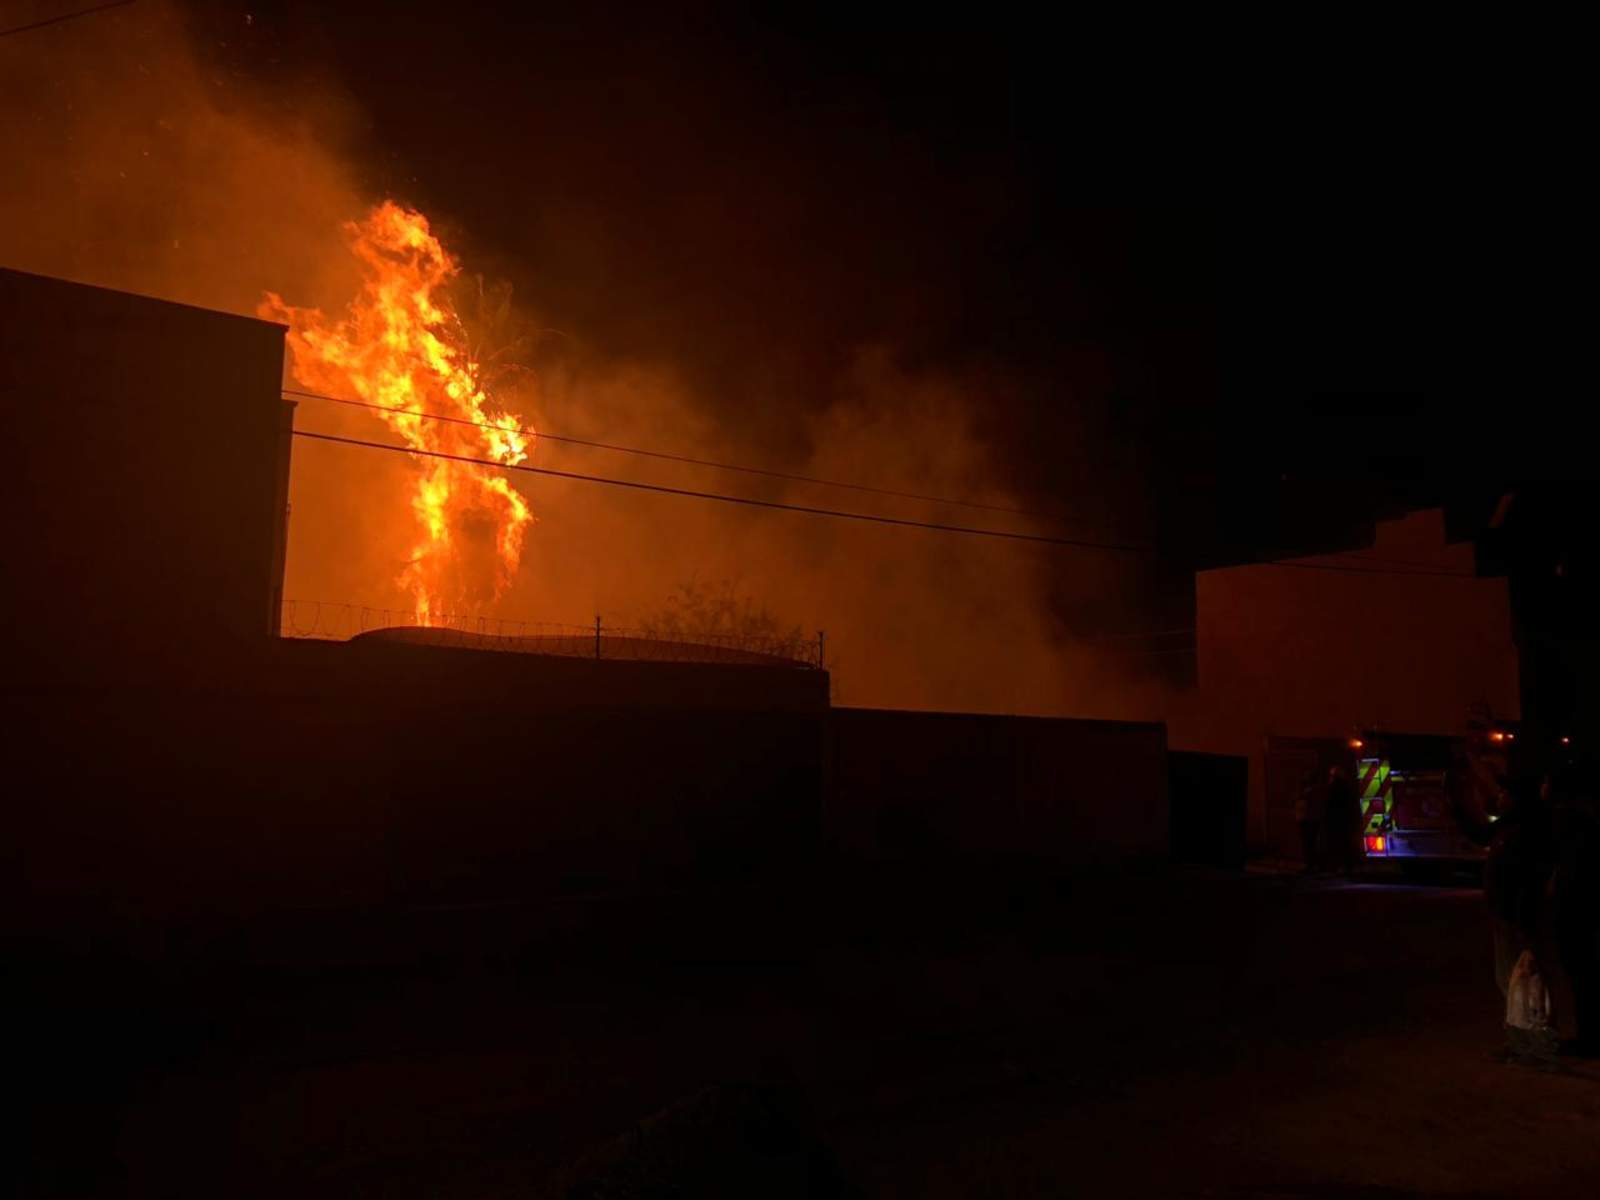 Incendio alarma a vecinos en Ampliación Los Ángeles